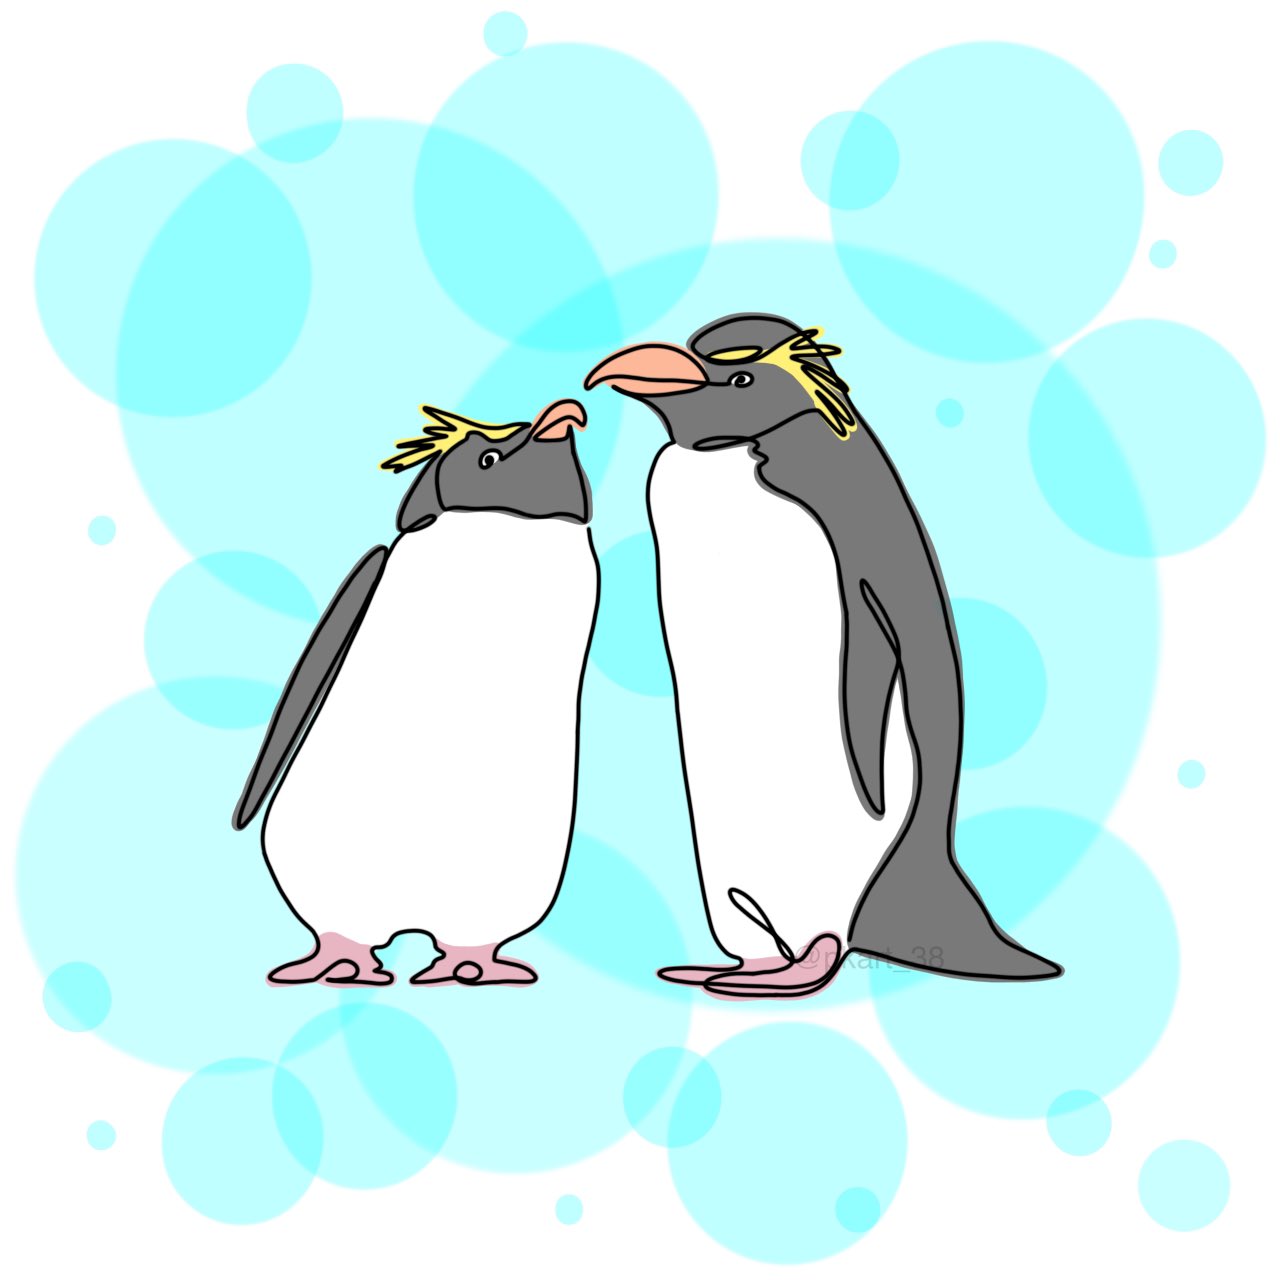 Twitter 上的 りんりん 一筆書き風 ペンギン 無断転載禁止 線画 一筆書き ペンギン ミナミイワトビペンギン イラスト シンプル おしゃれ 絵描きさんと繋がりたい イラスト好きな人と繋がりたい